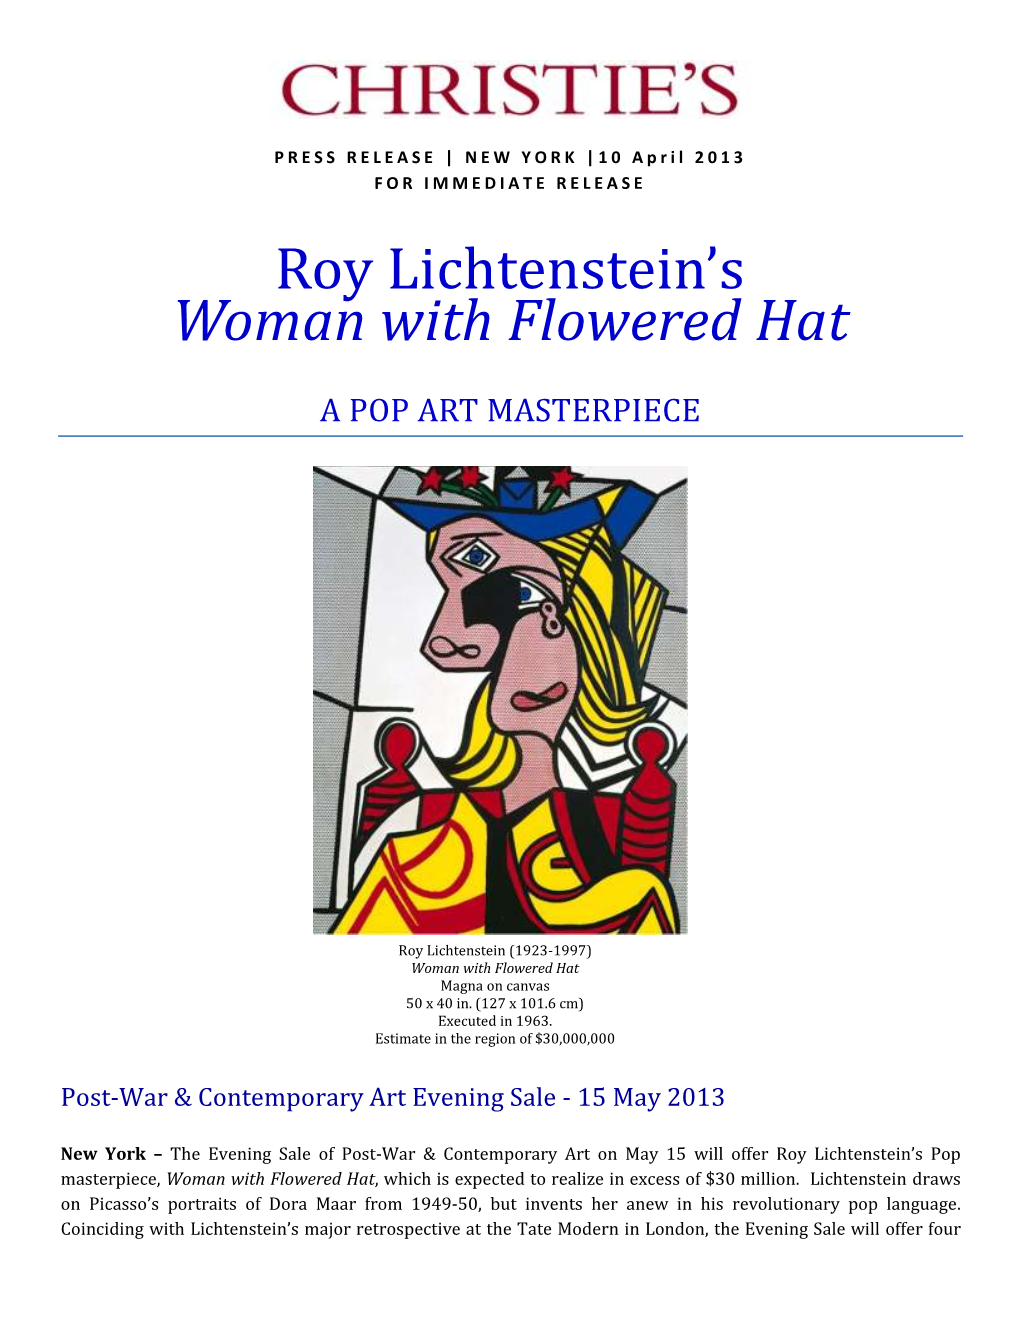 Roy Lichtenstein's Woman with Flowered